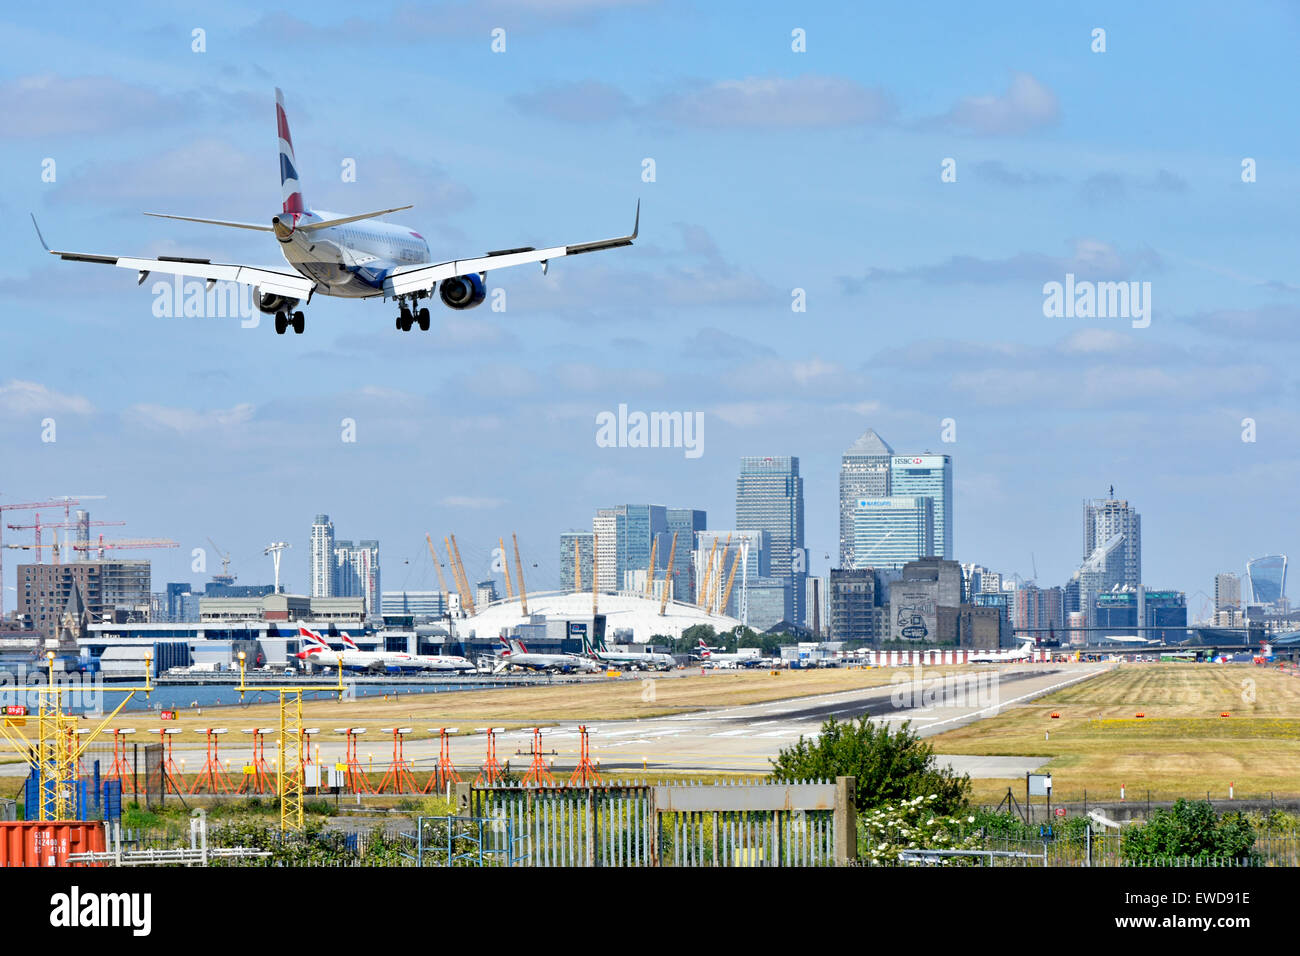 British Airways à l'atterrissage de l'avion l'aéroport de London City Newham avec O2 arena et Canary Wharf à Londres Docklands skyline au-delà de Tower Hamlets England UK Banque D'Images